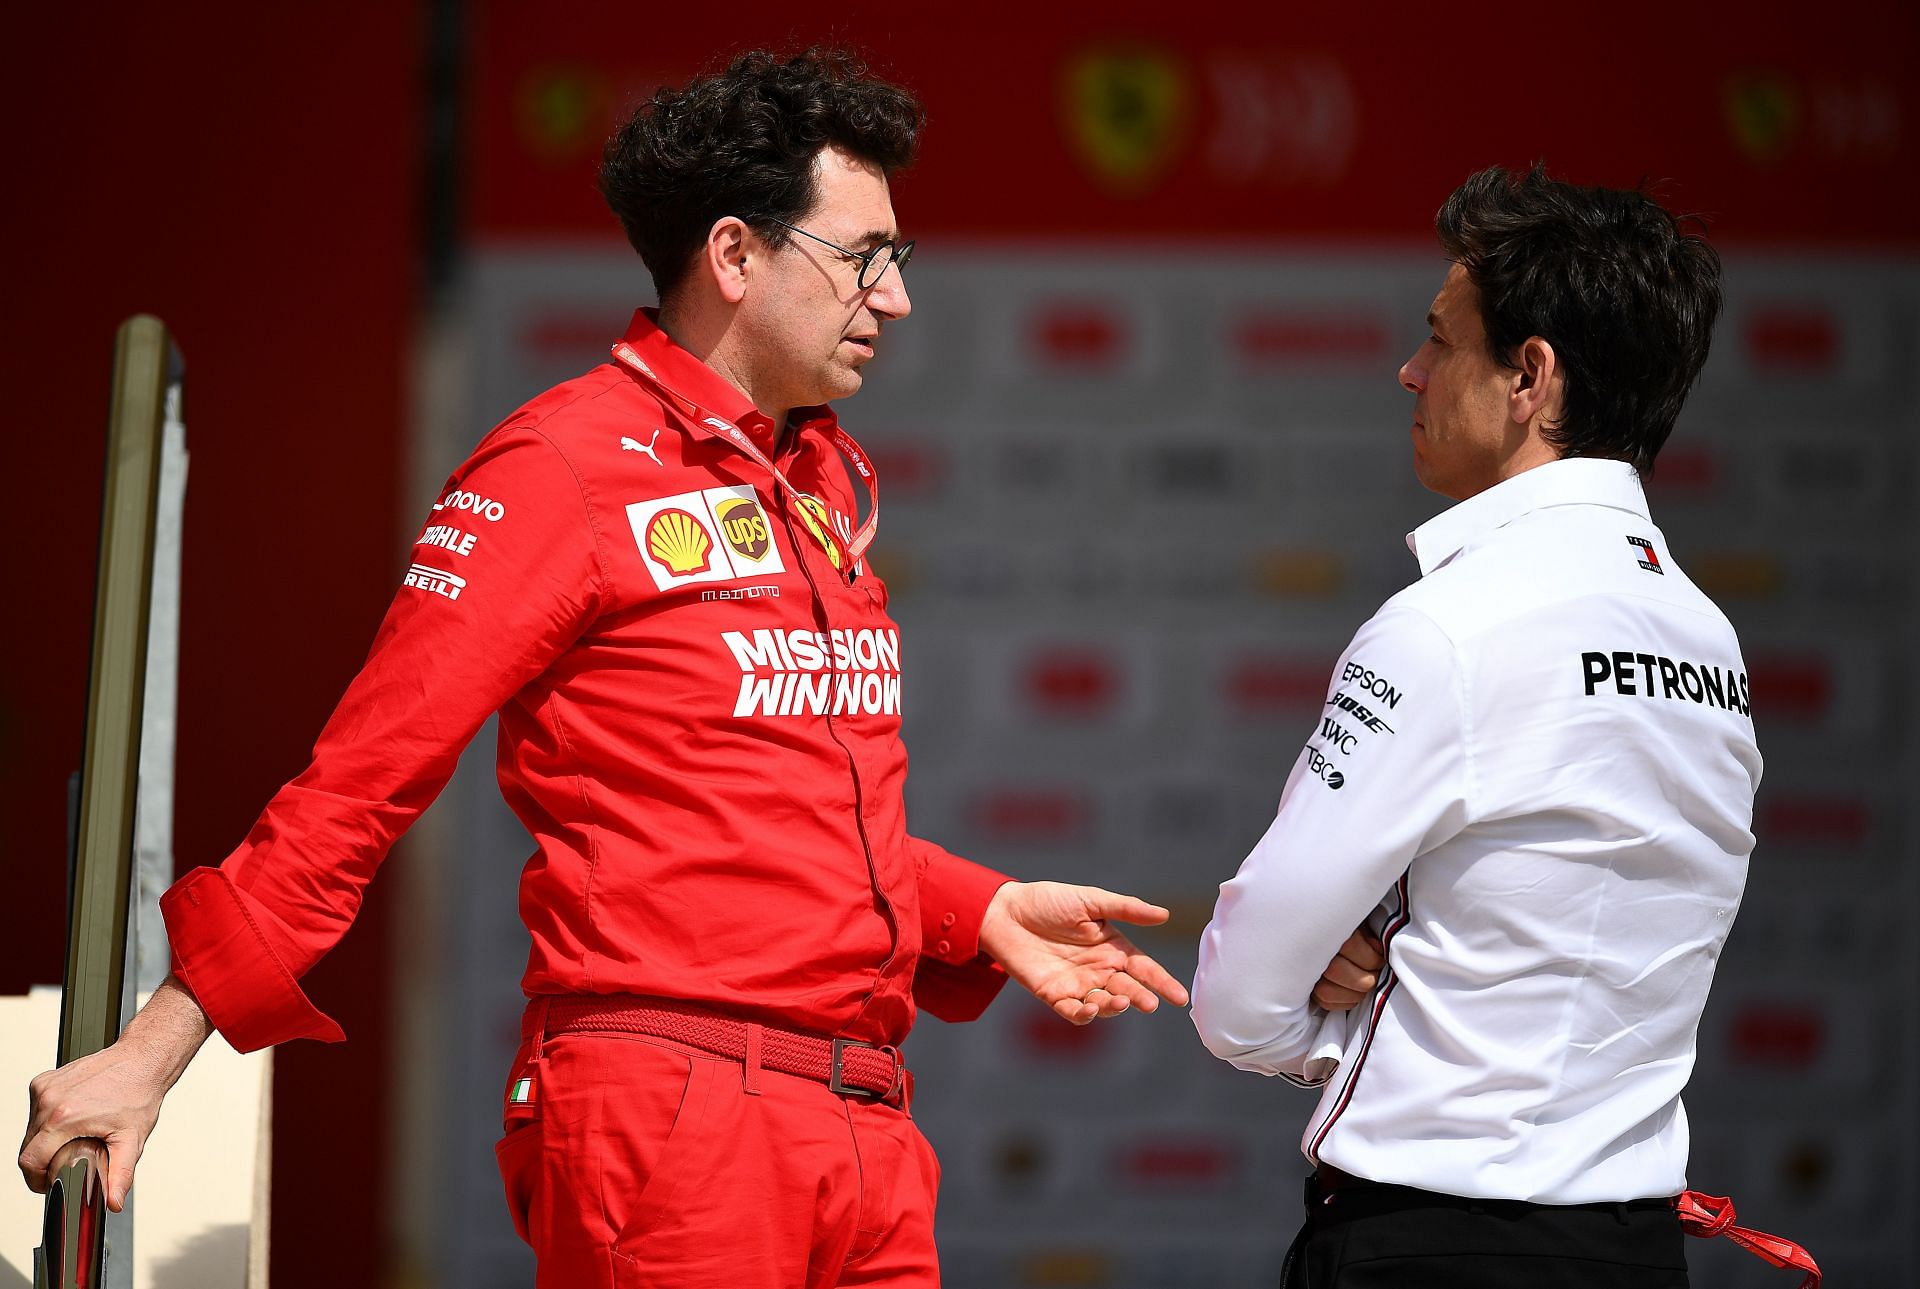 Mattia Binotto (left) and Toto Wolff (right) at the F1 Grand Prix of Bahrain